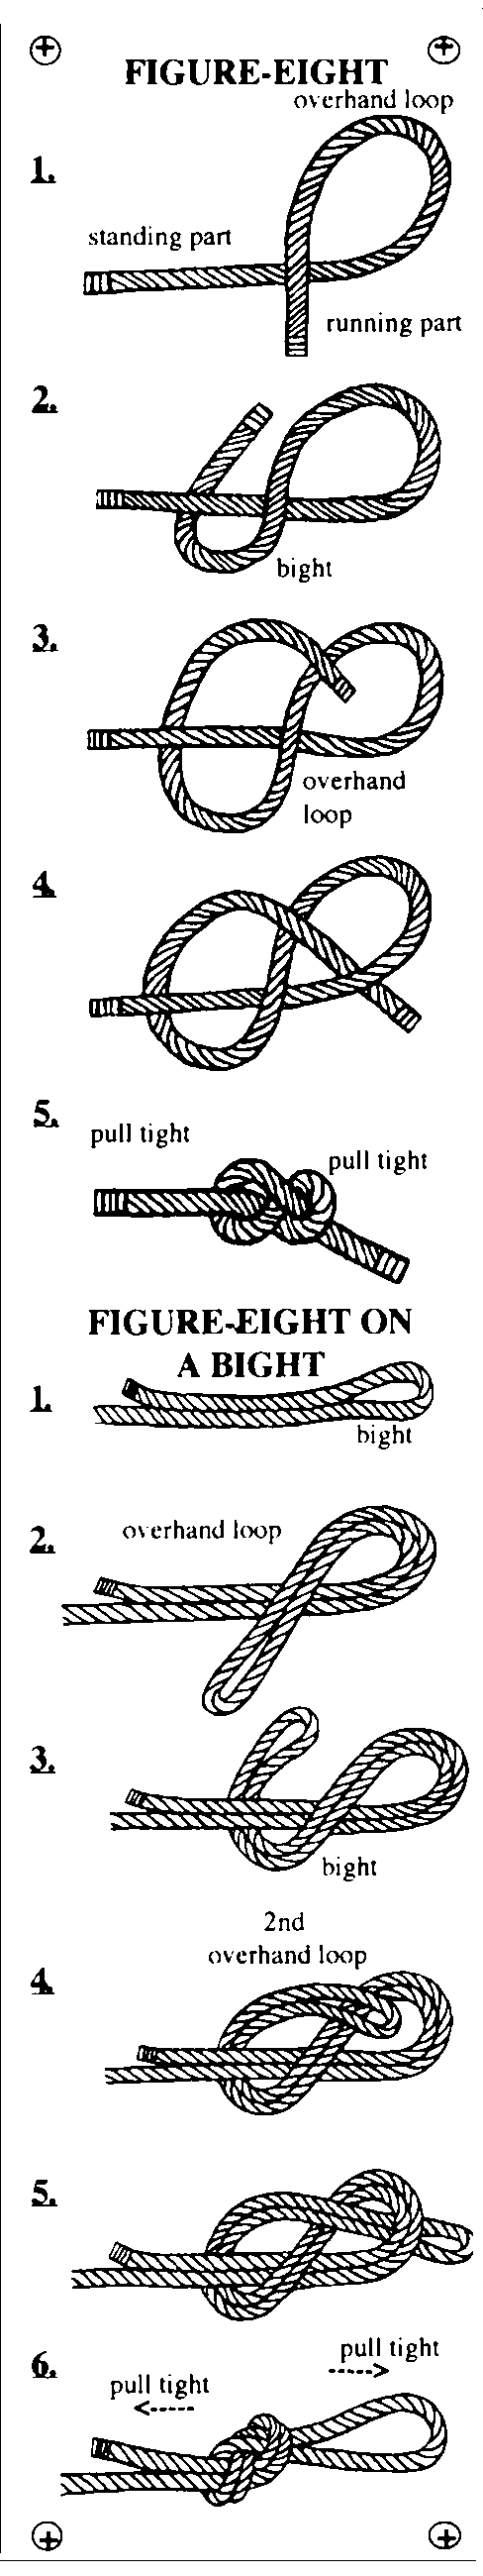 Figure-eight